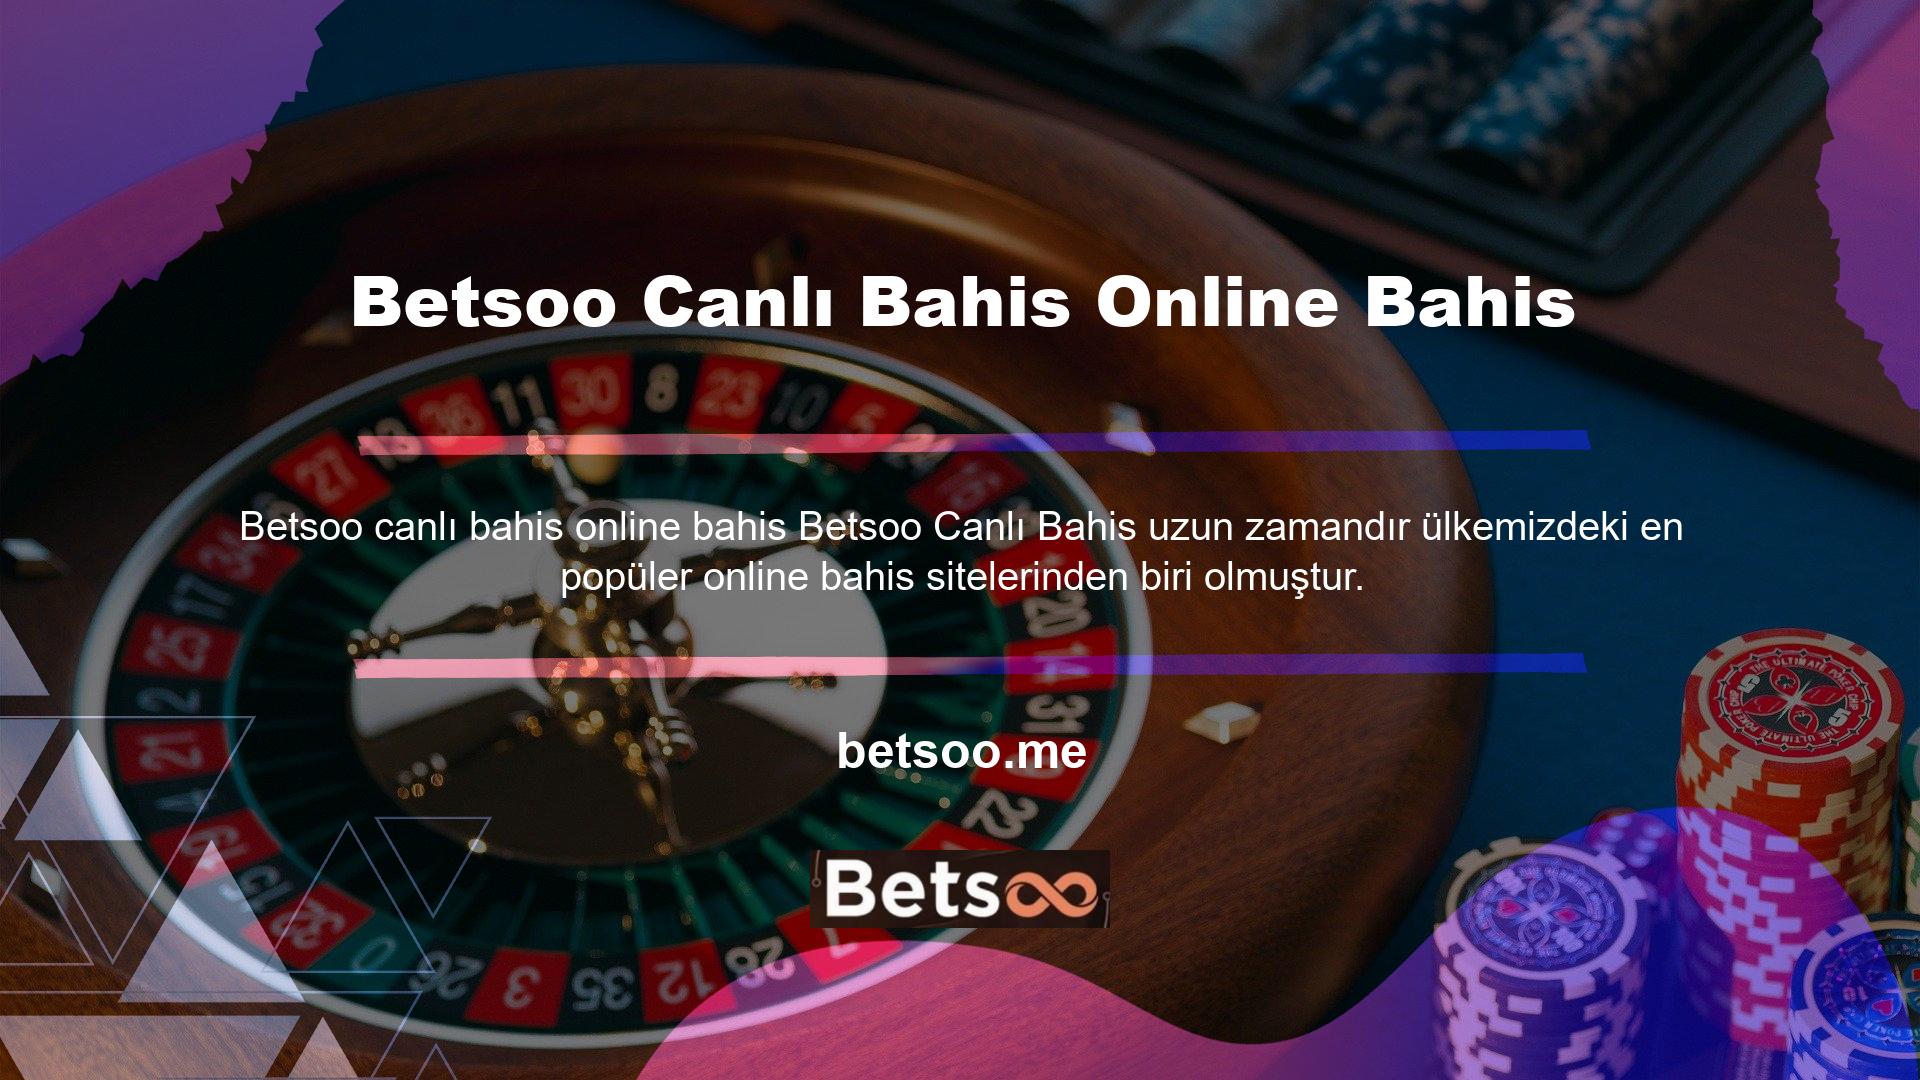 Farklı gerilimler ve farklı oyunlar arayanlar için Betsoo, kullanıcılarına geniş bir canlı bahis yelpazesi sunmaktadır